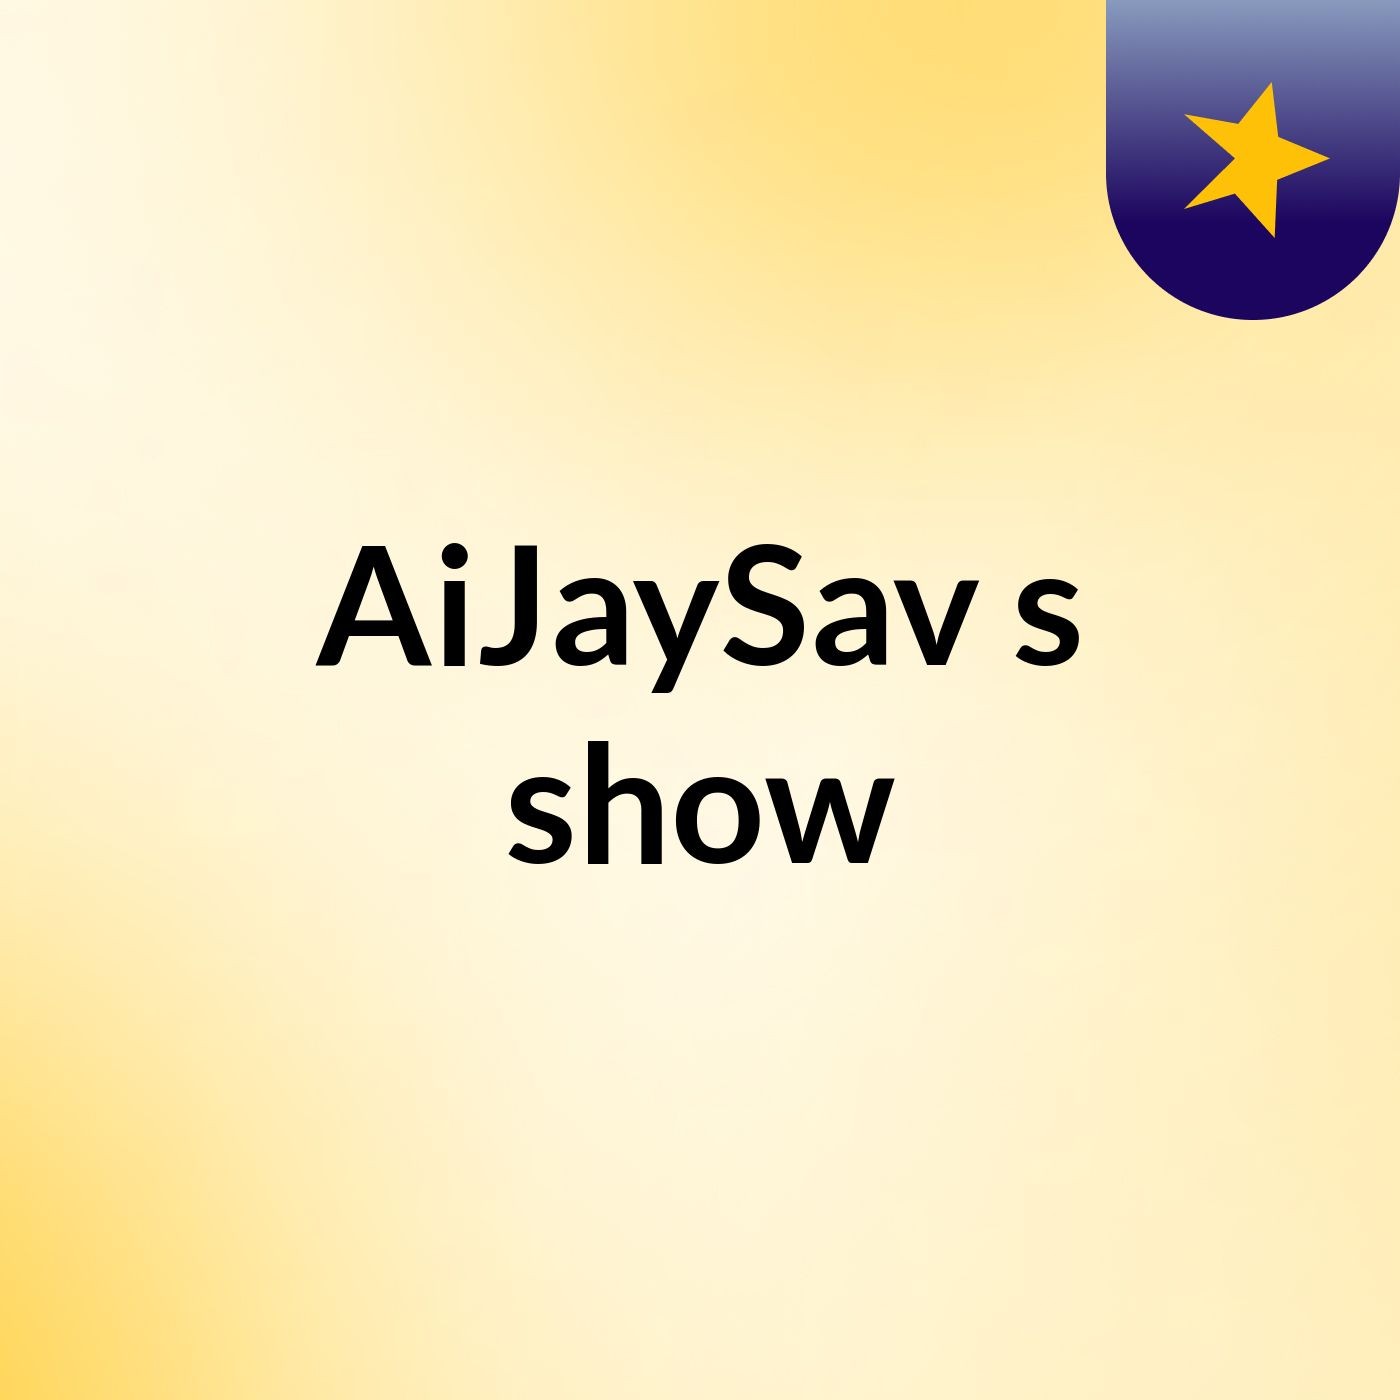 AiJaySav's show